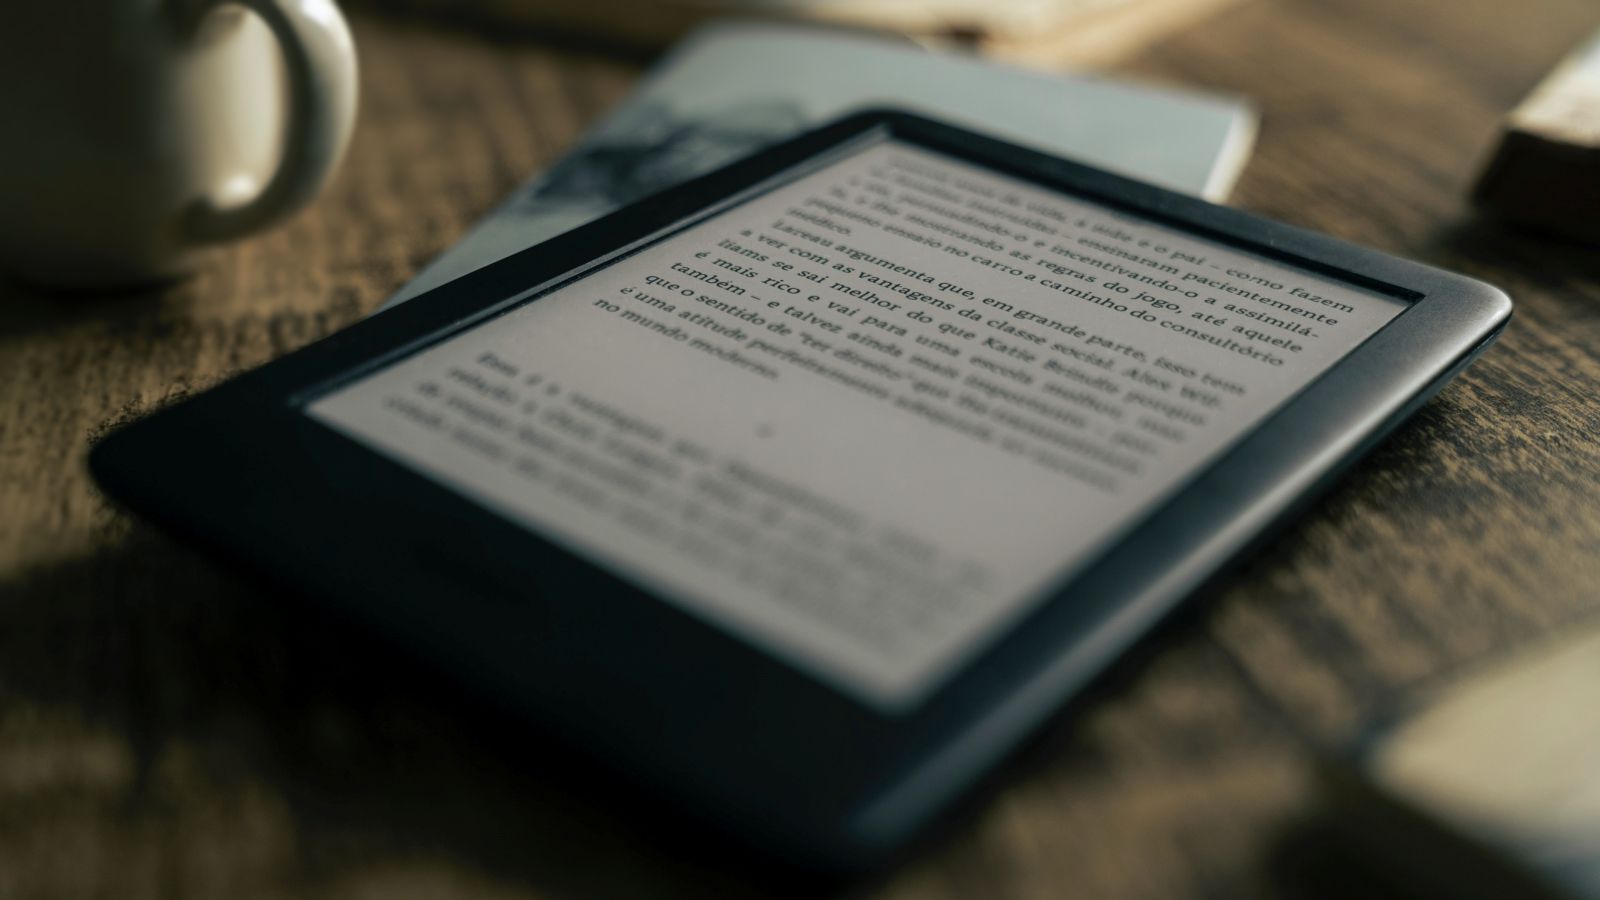 O Kindle é o e-reader mais popular do mercado. (Imagem: Reprodução/felipepelaquim/Unsplash)